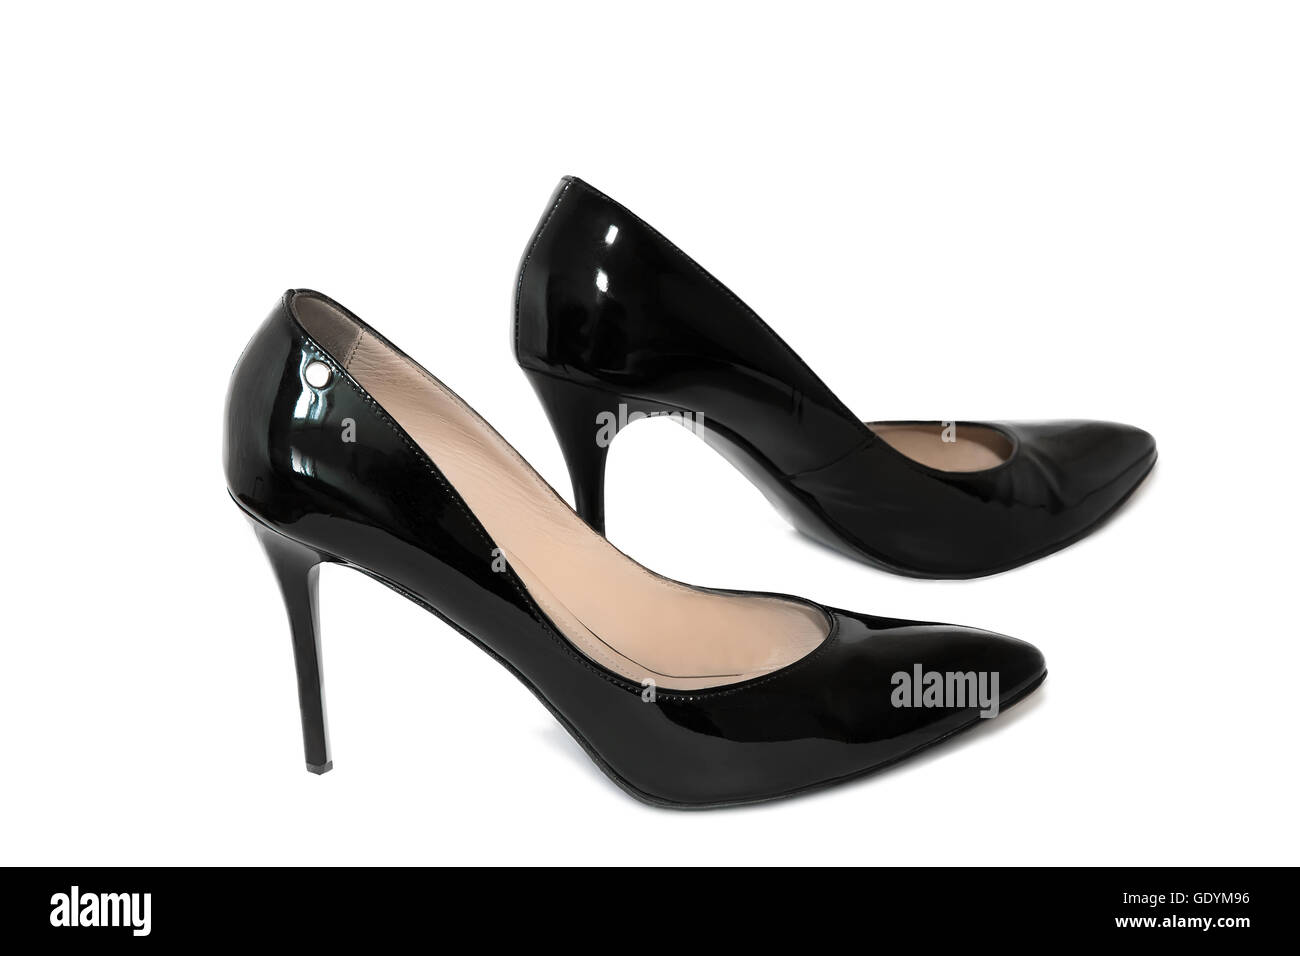 Belles chaussures pour femmes élégantes en cuir noir à talons hauts. Présenté sur un fond blanc. Banque D'Images